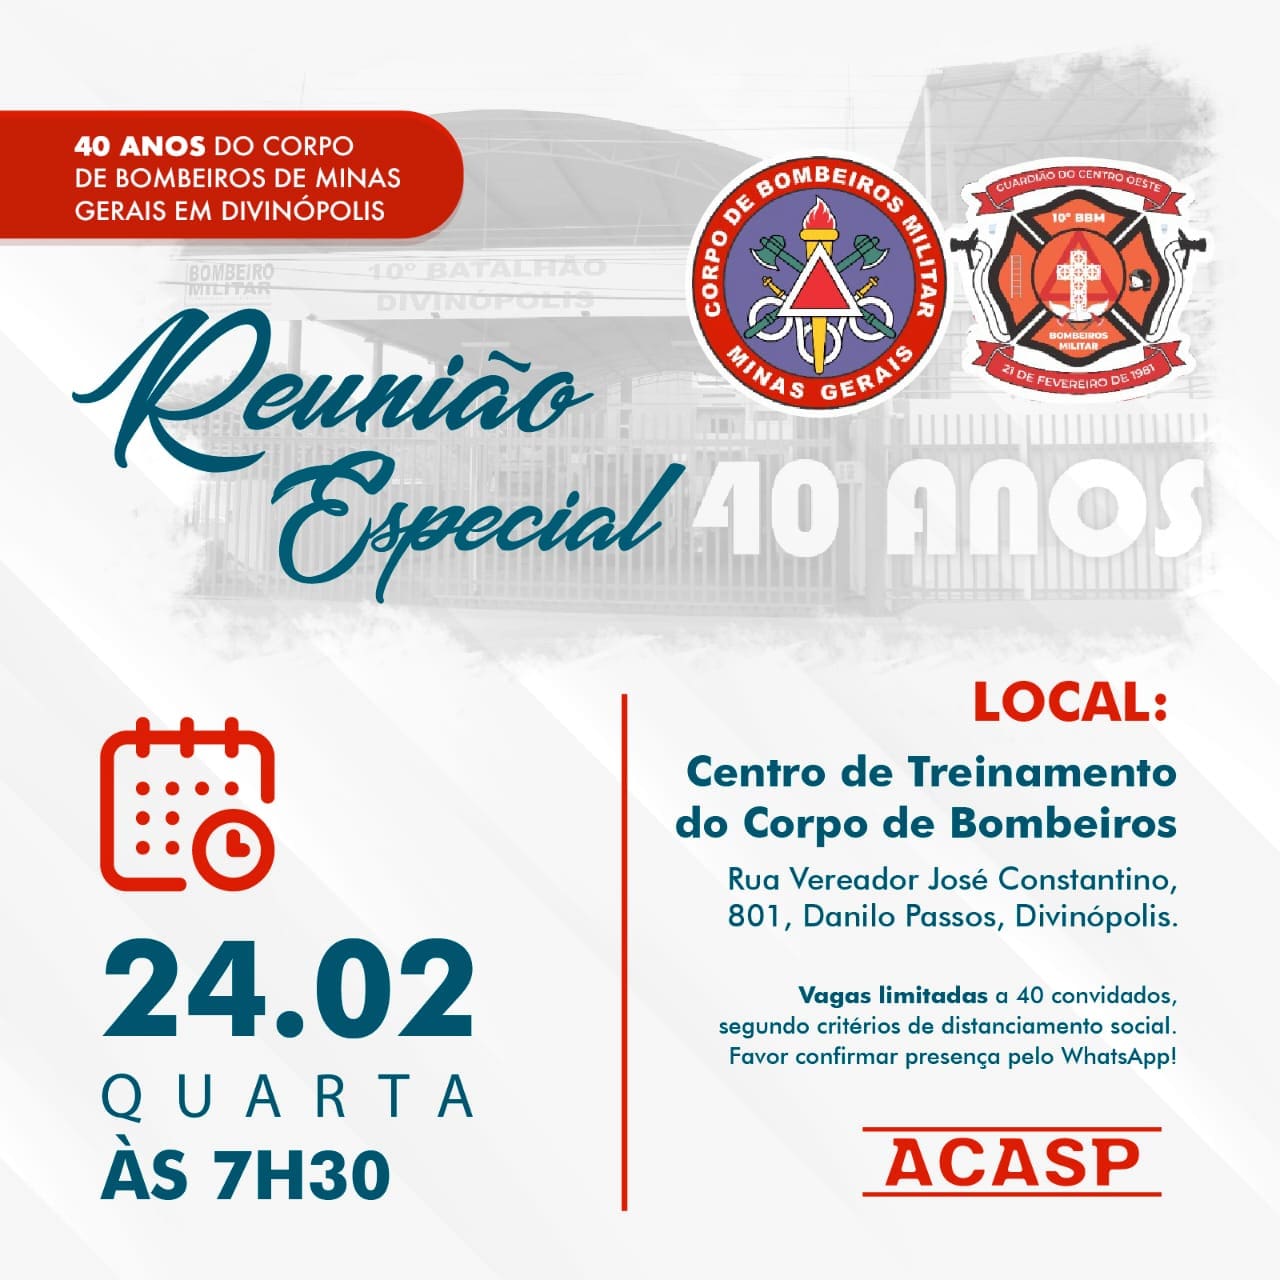 Reunião Especial da Acasp marca comemoração dos 40 anos do Corpo de Bombeiros em Divinópolis